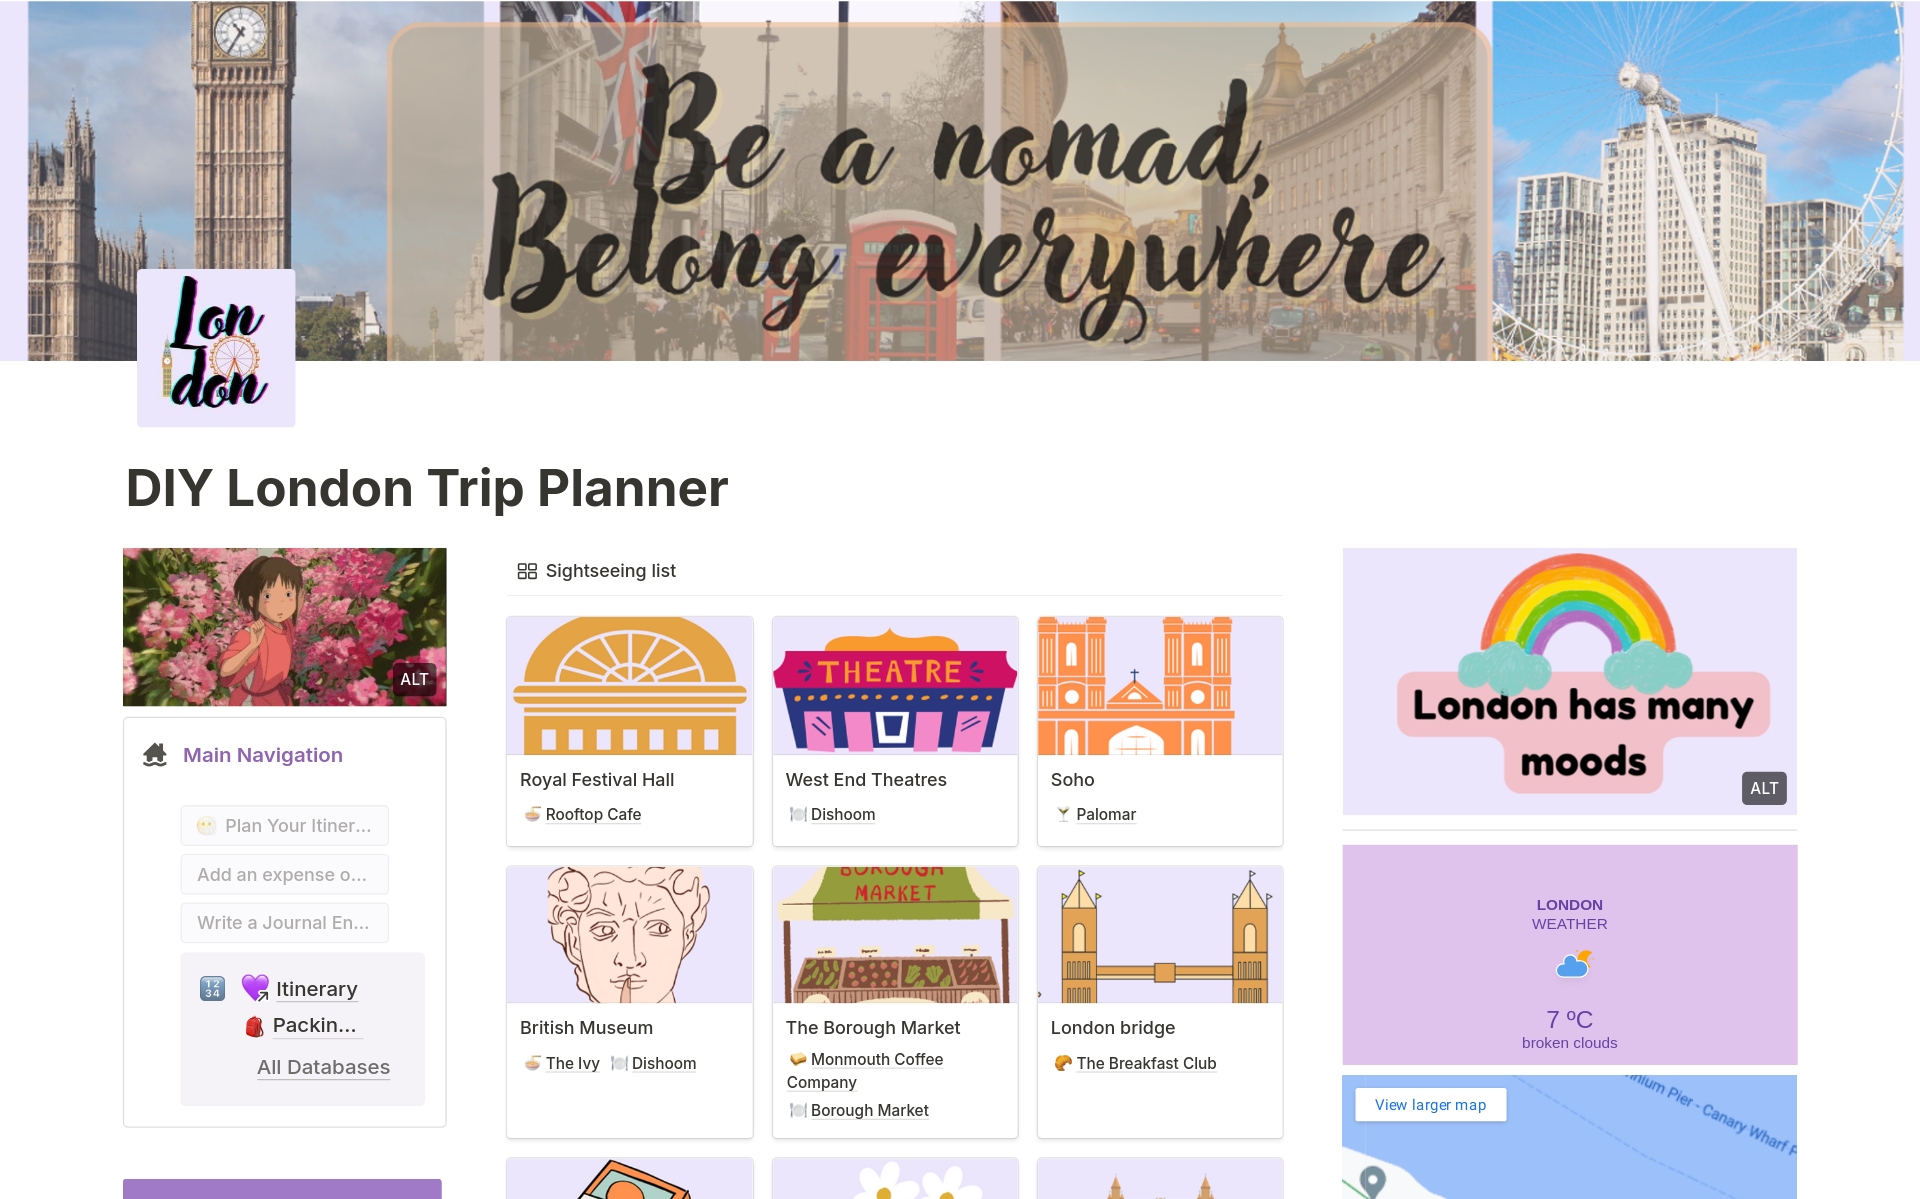 DIY London Trip Planner님의 템플릿 미리보기